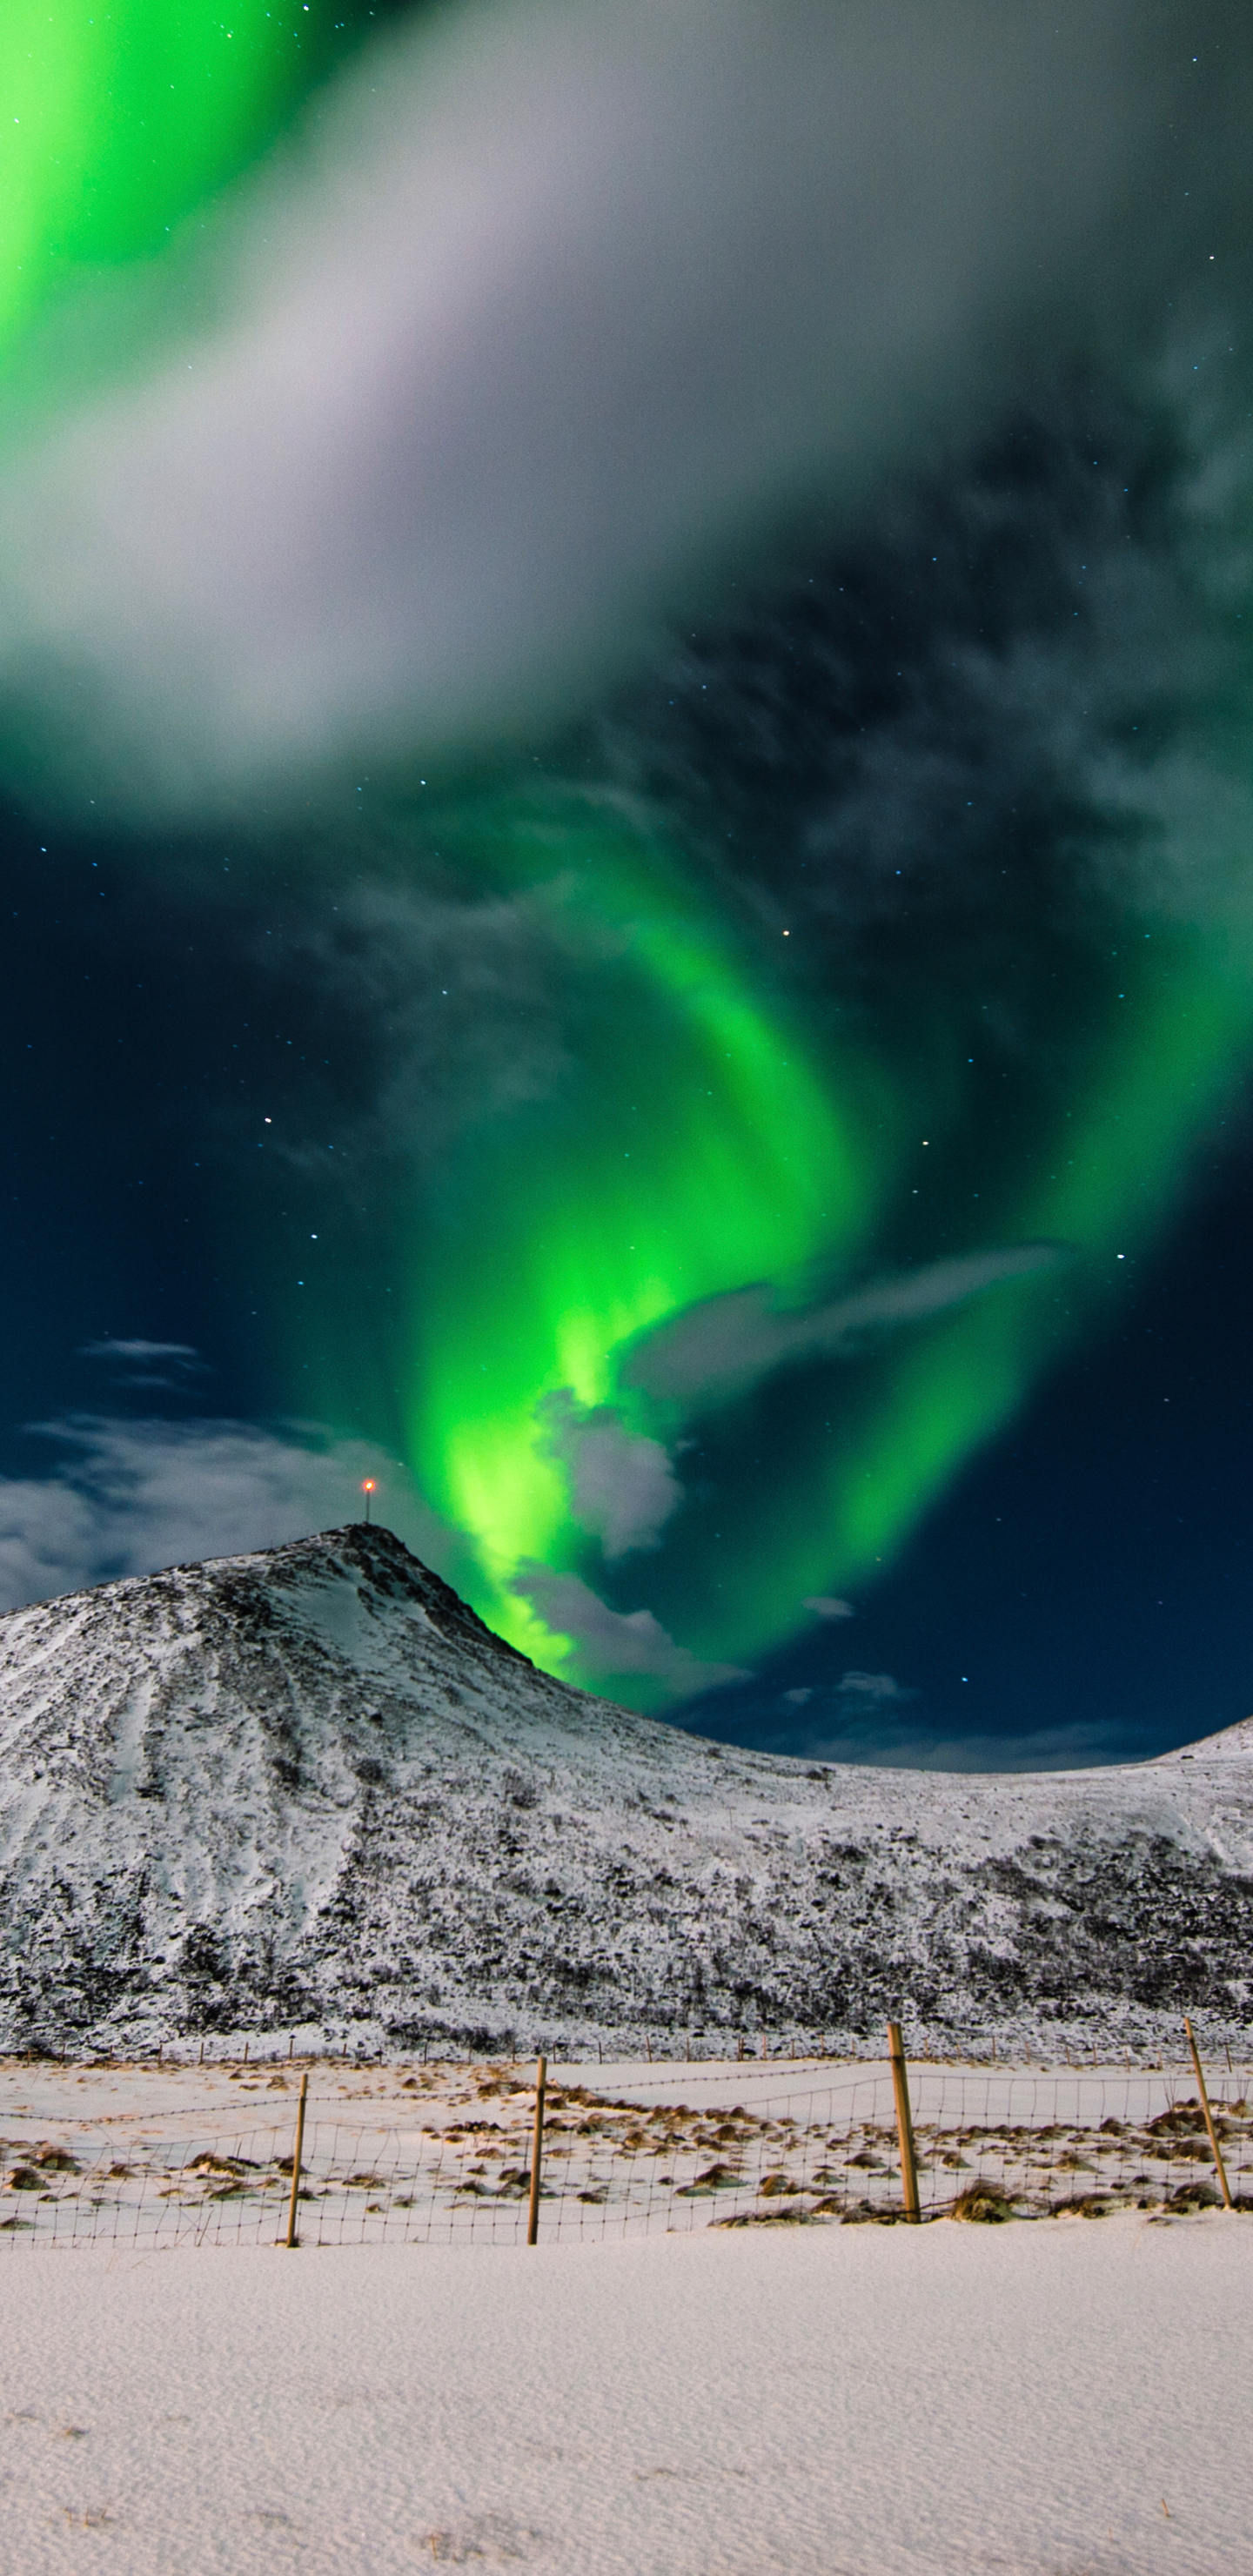 Descarga gratuita de fondo de pantalla para móvil de Paisaje, Naturaleza, Cielo, Noche, Nieve, Montaña, Aurora Boreal, Noruega, Tierra/naturaleza.